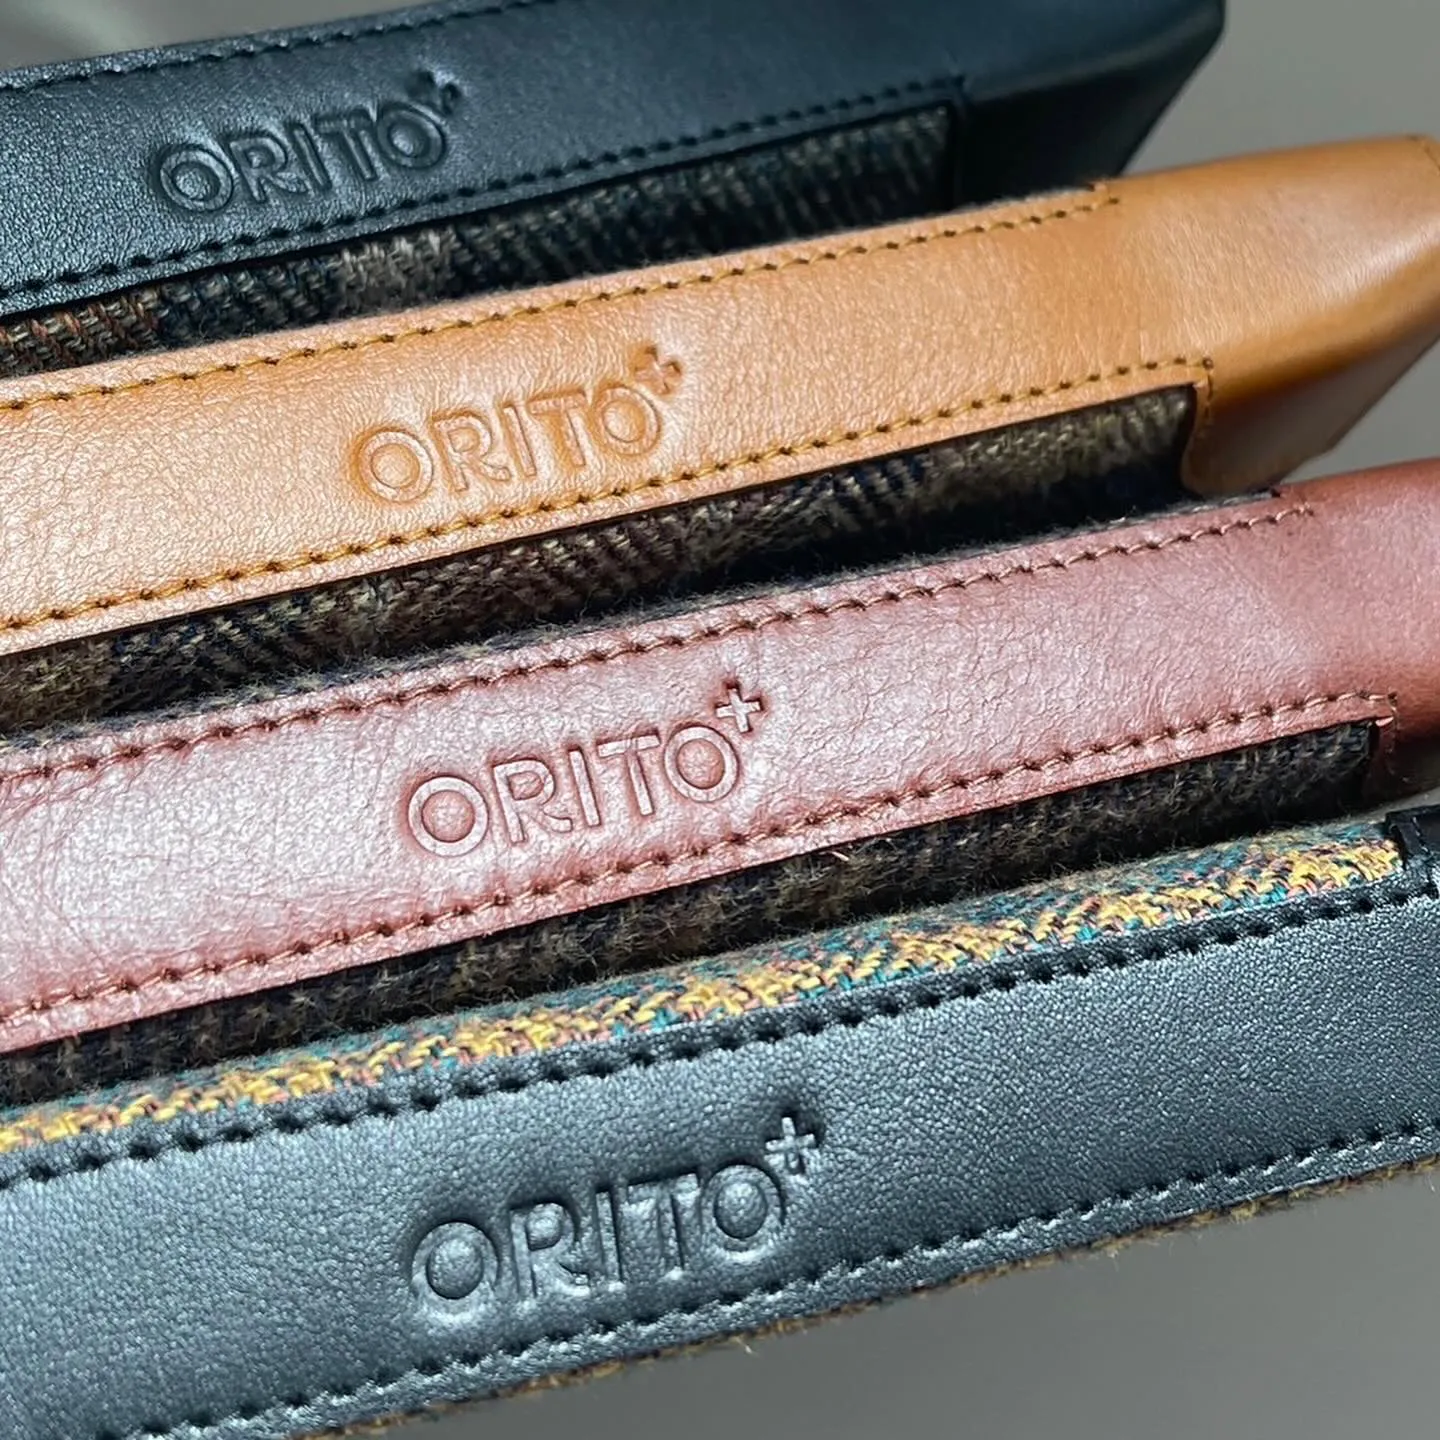 ORITO+の新商品